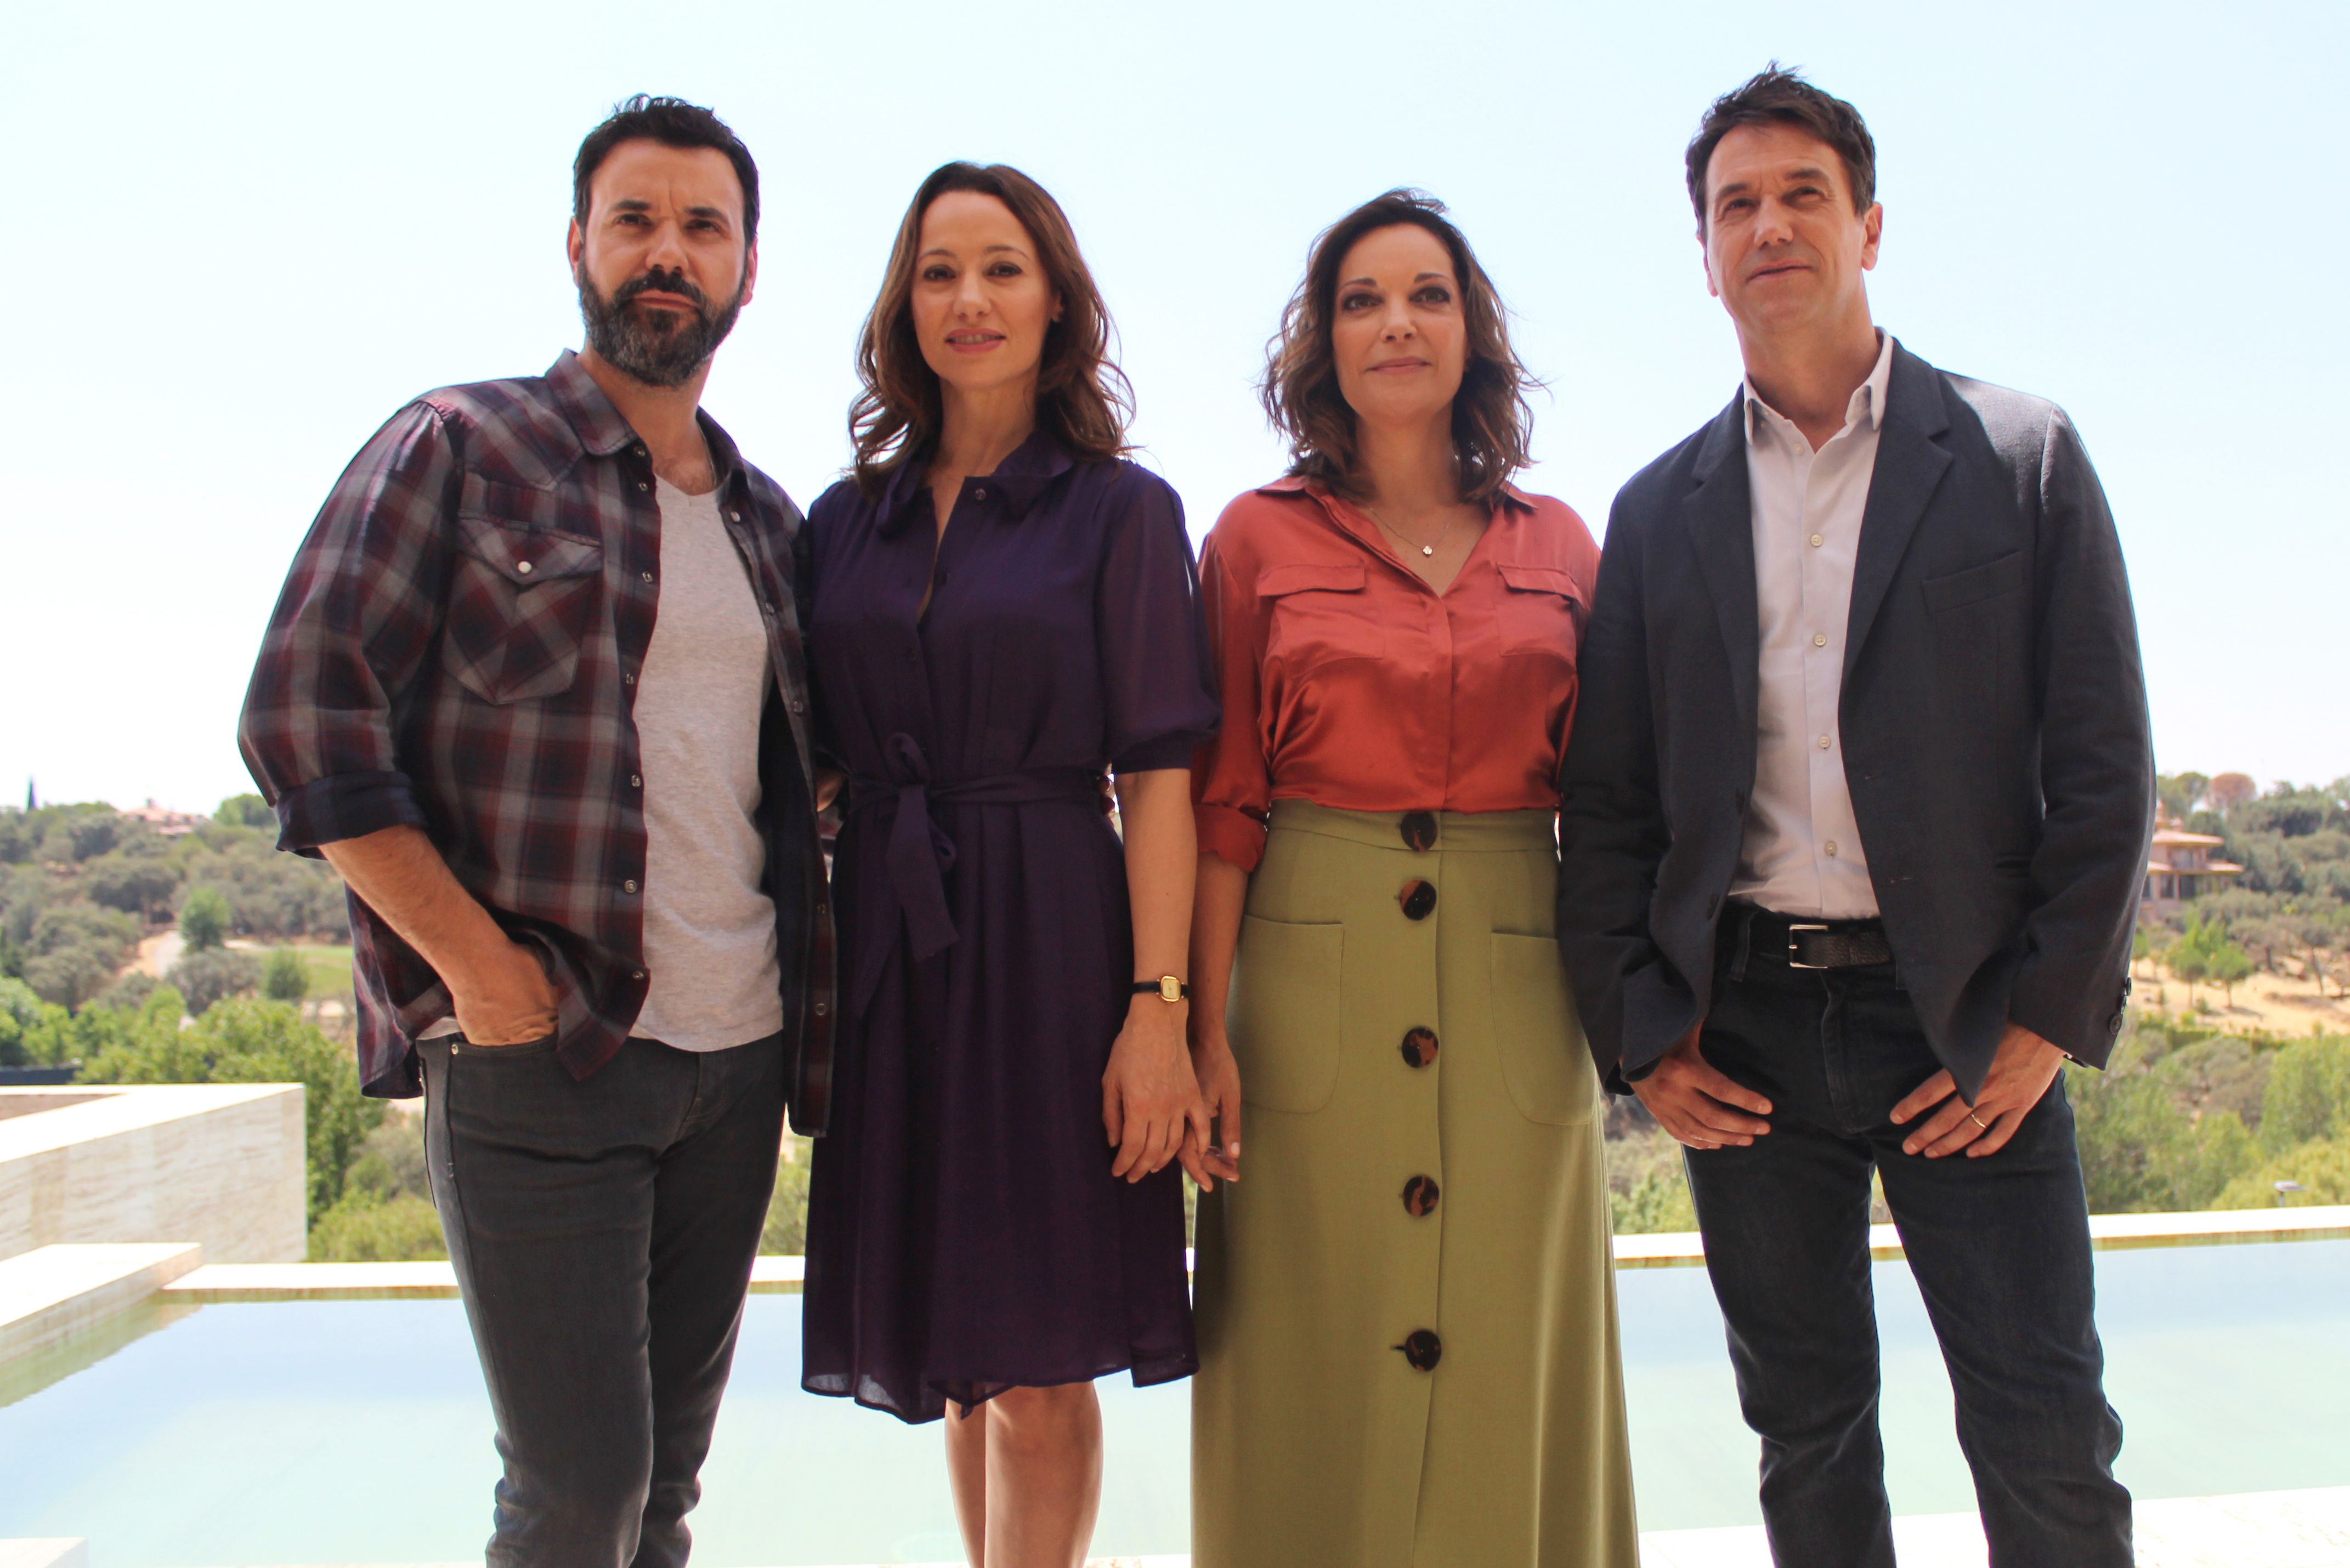 Quién es quién en El nudo, la nueva serie de Antena 3